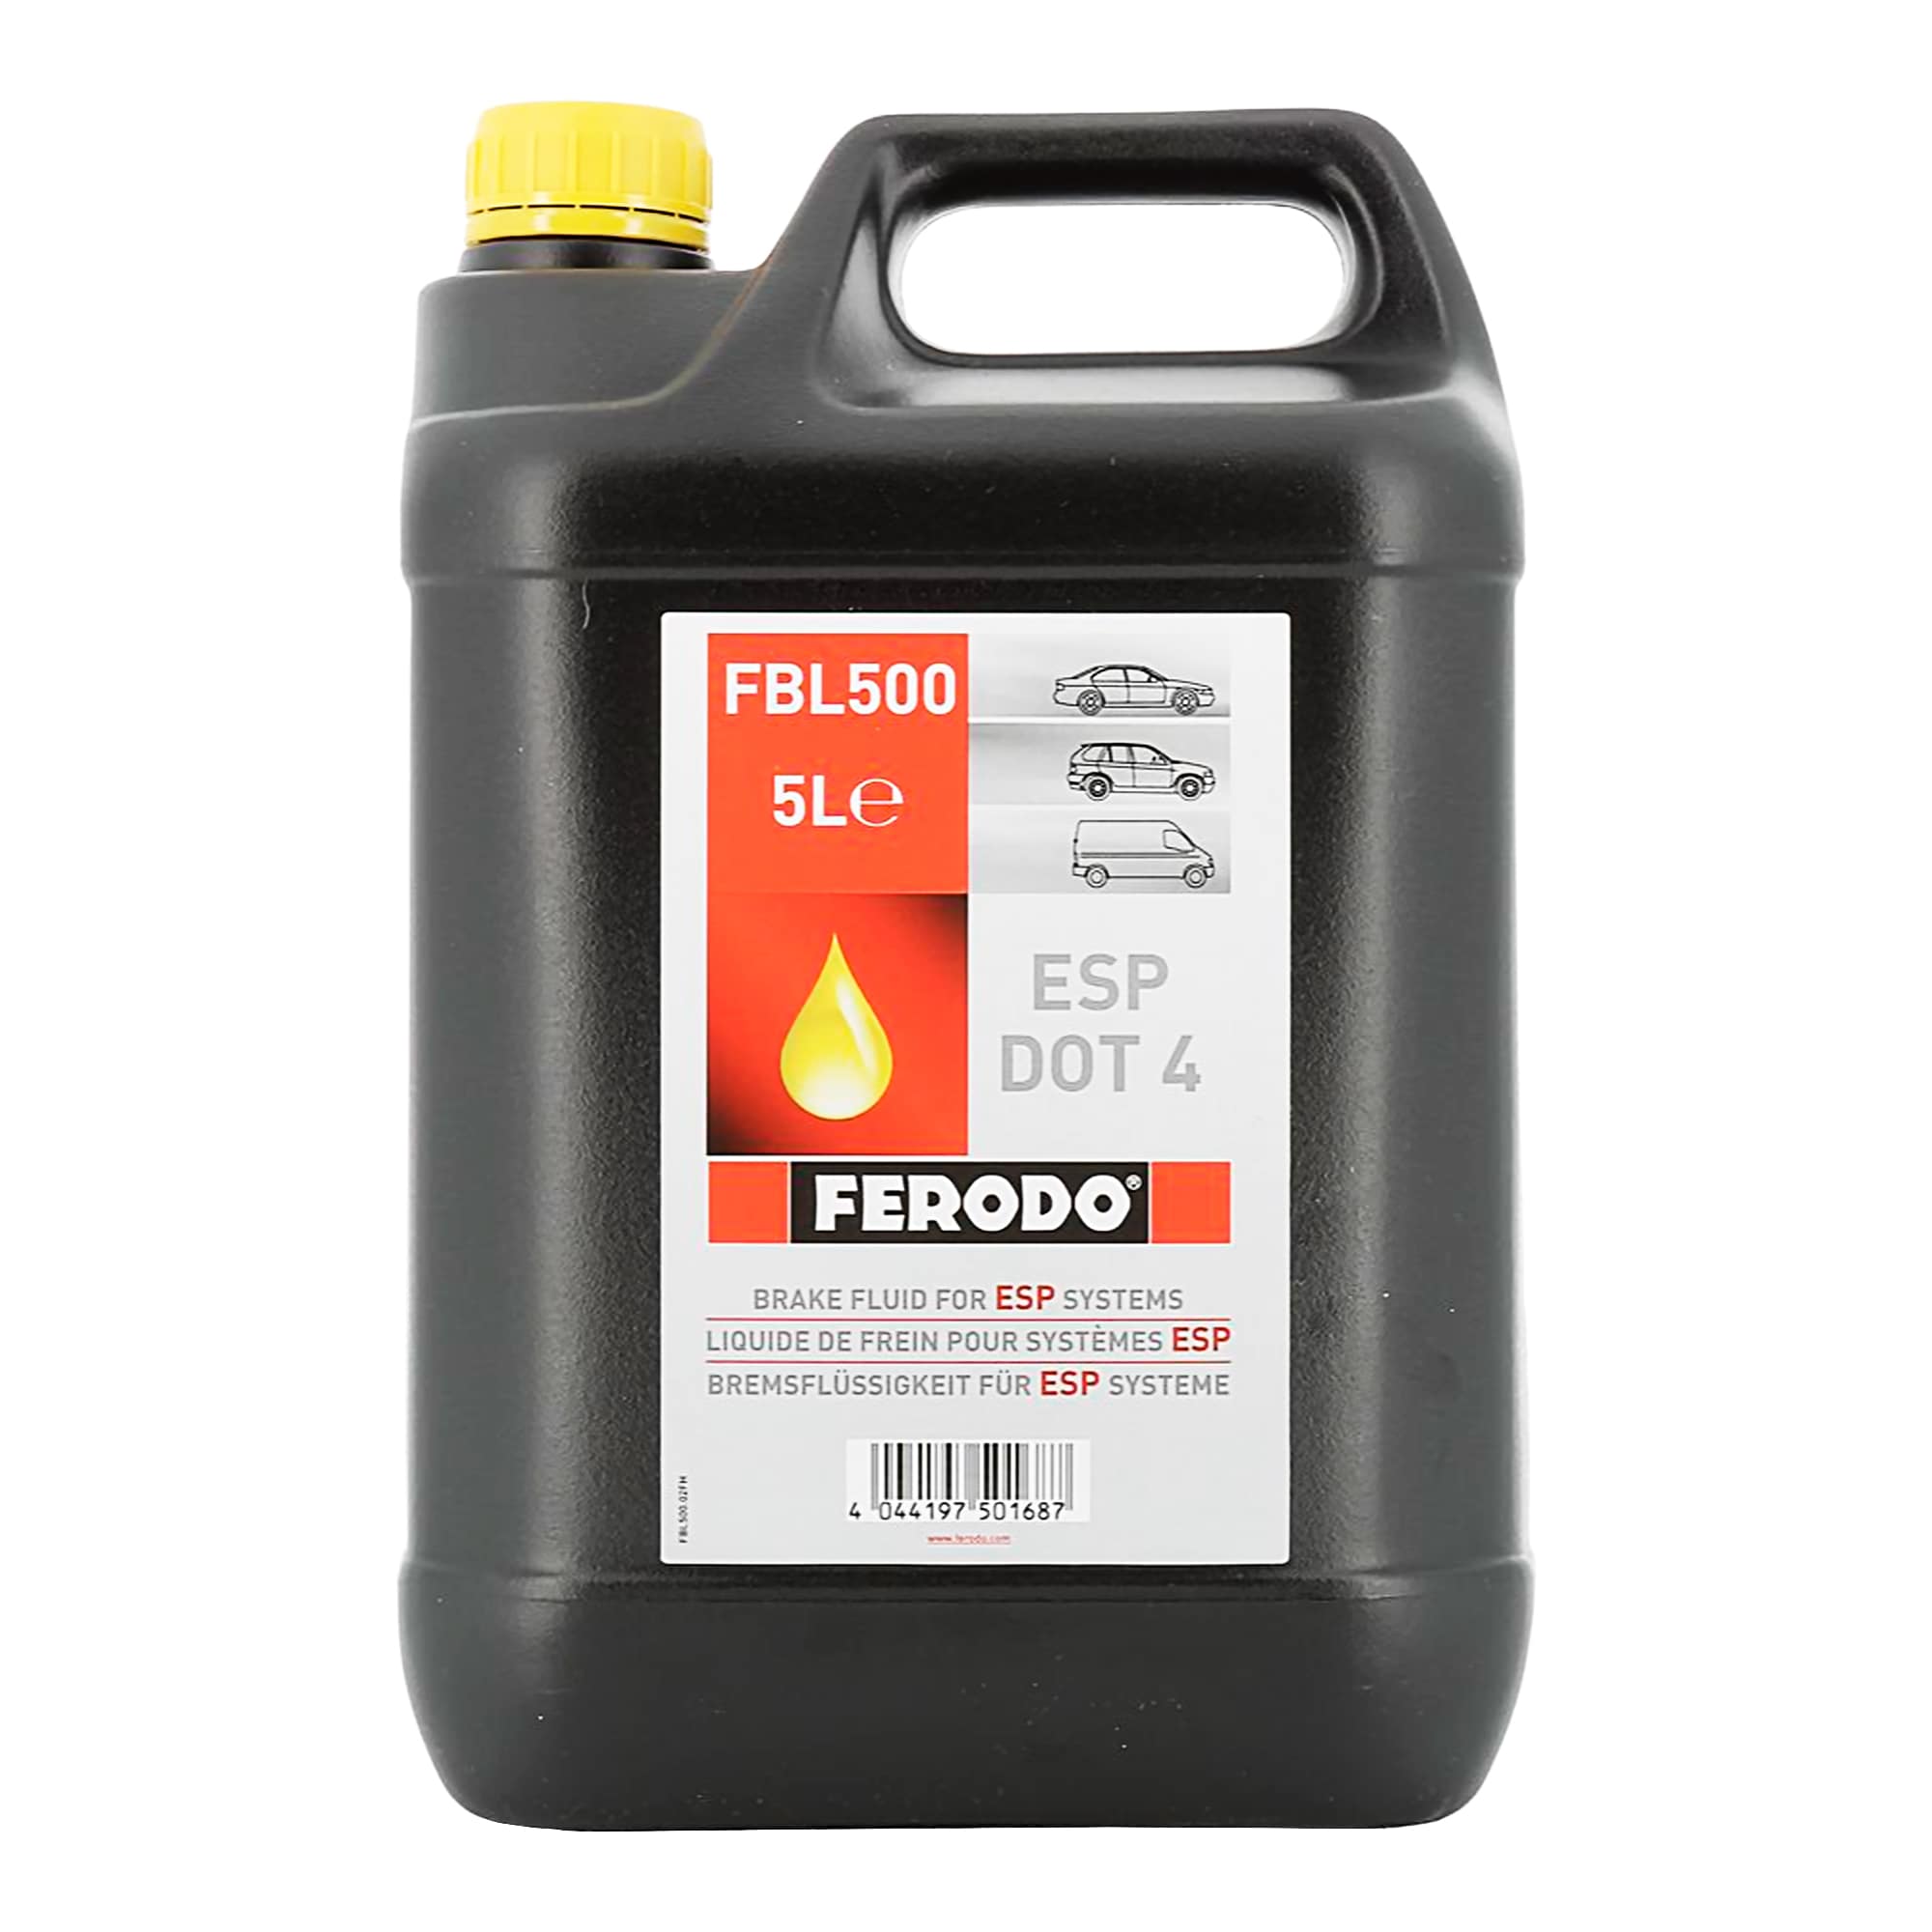 Тормозная жидкость Ferodo DOT 4 5л